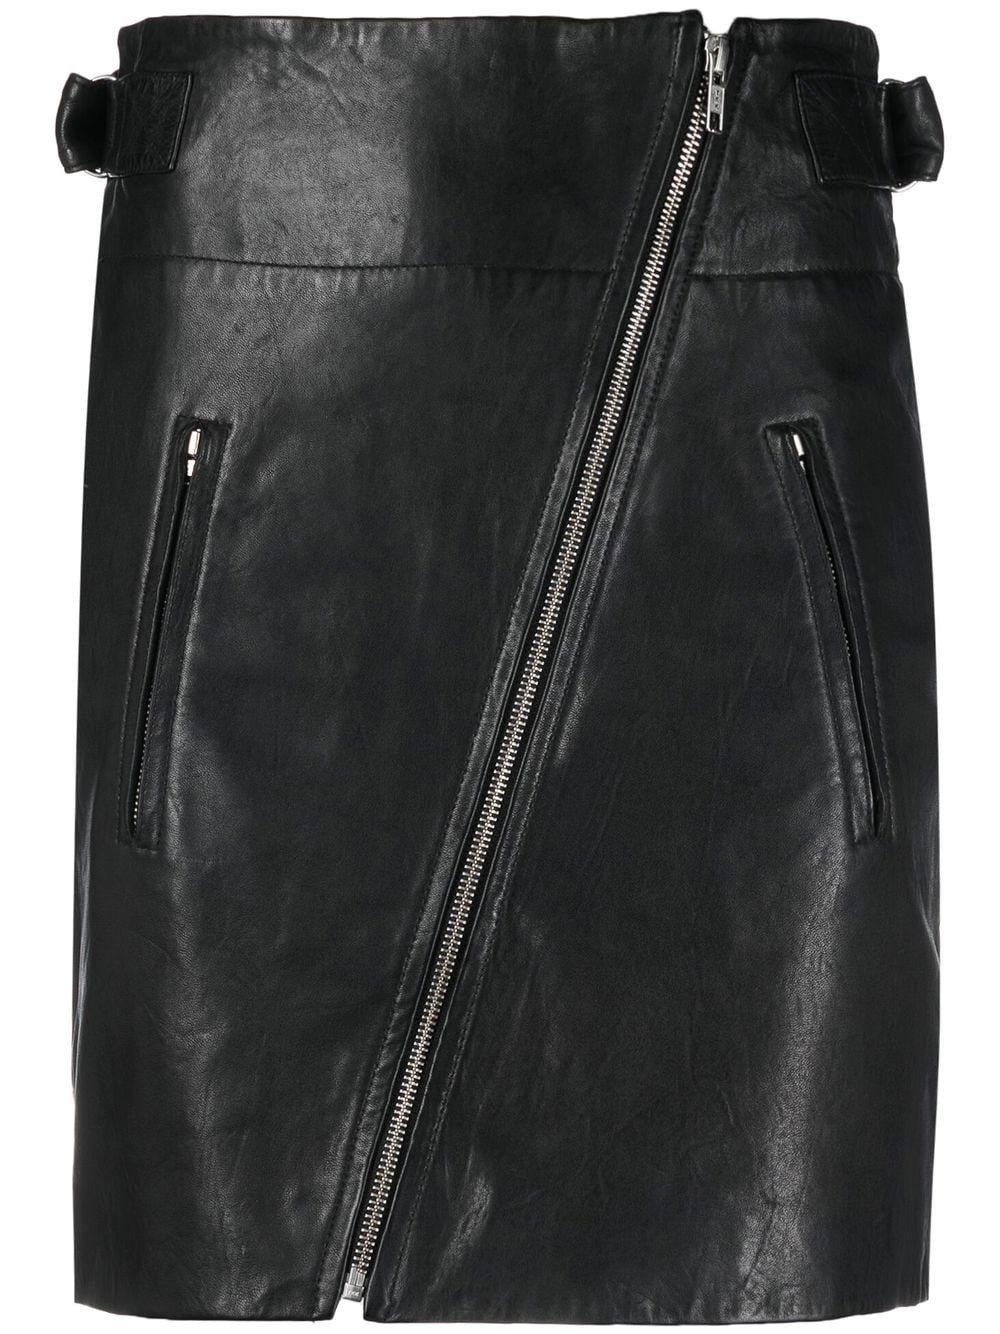 MARANT ÉTOILE high-waisted leather skirt - Black von MARANT ÉTOILE